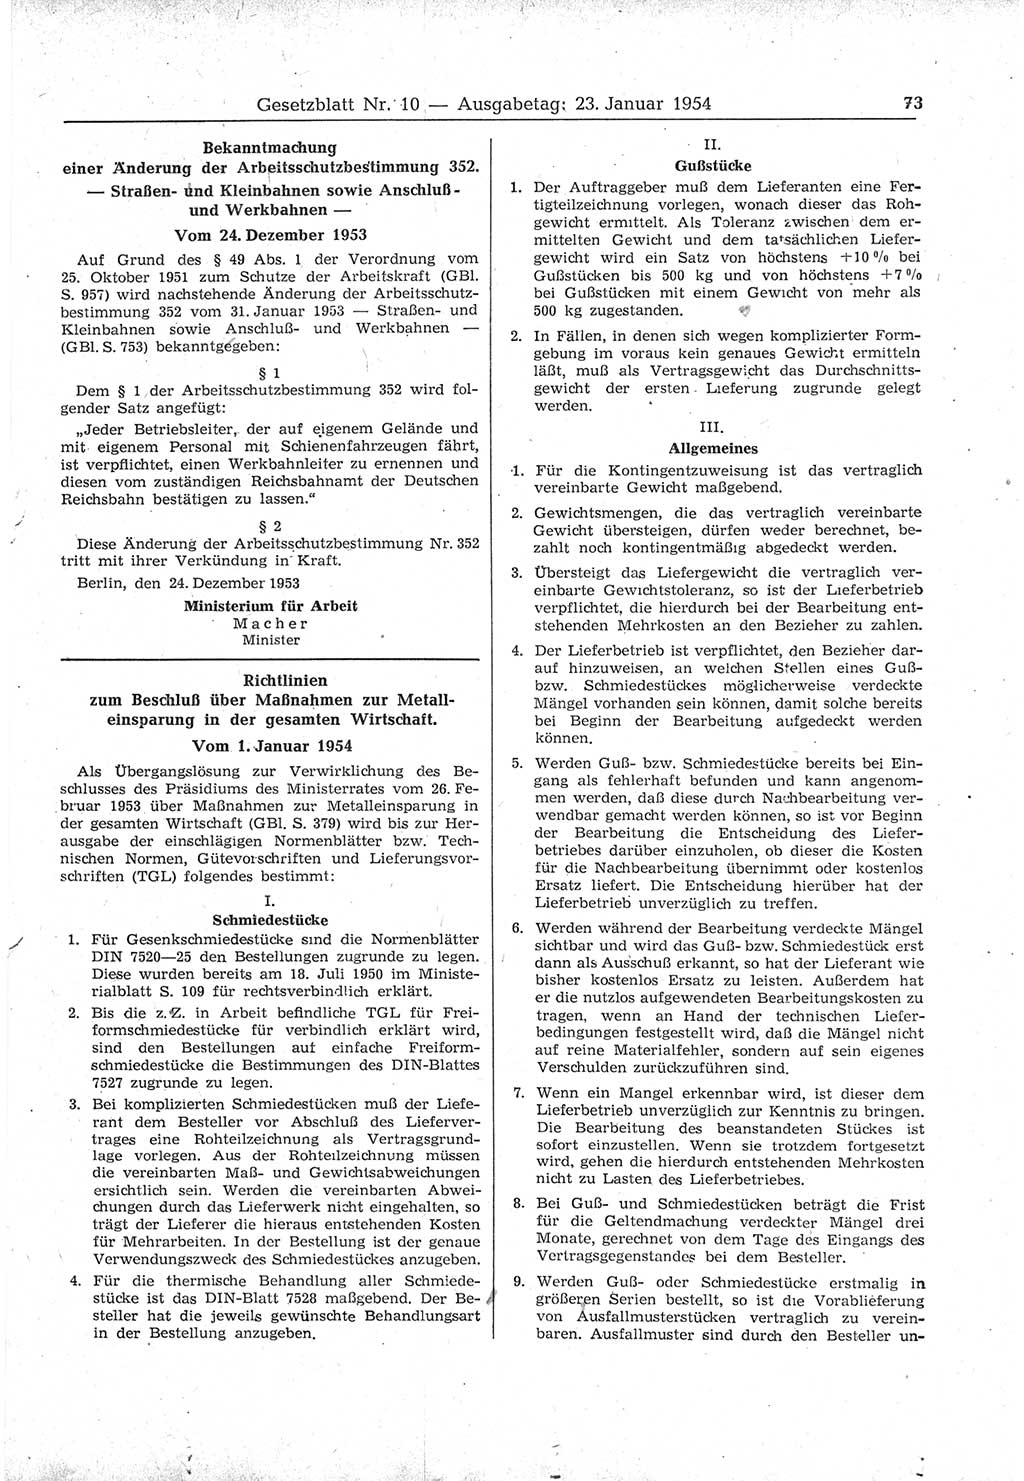 Gesetzblatt (GBl.) der Deutschen Demokratischen Republik (DDR) 1954, Seite 73 (GBl. DDR 1954, S. 73)